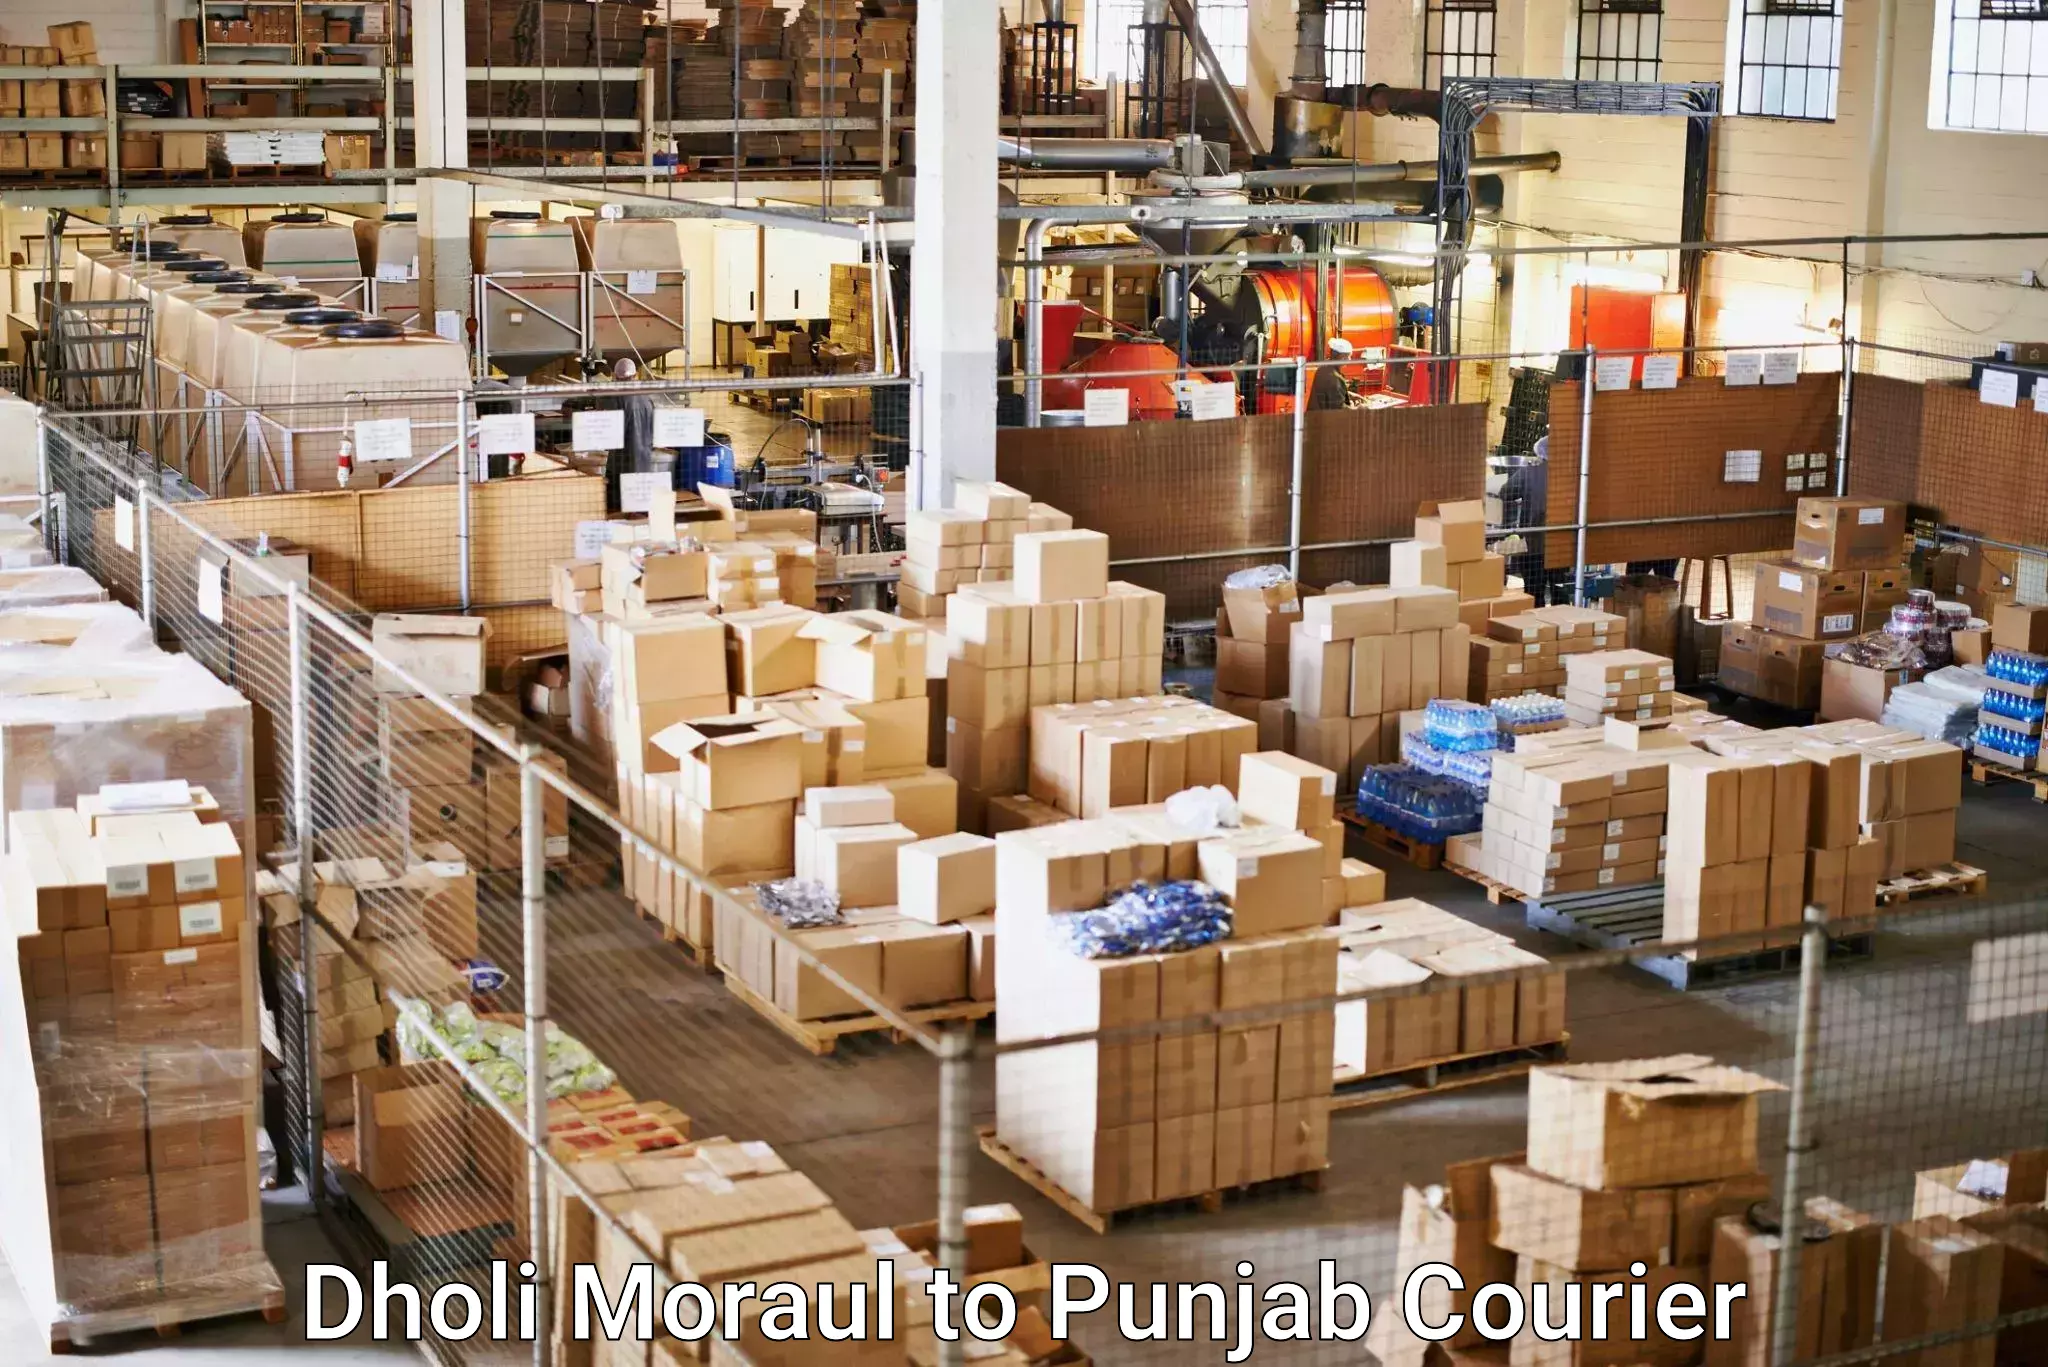 Business shipping needs Dholi Moraul to Punjab